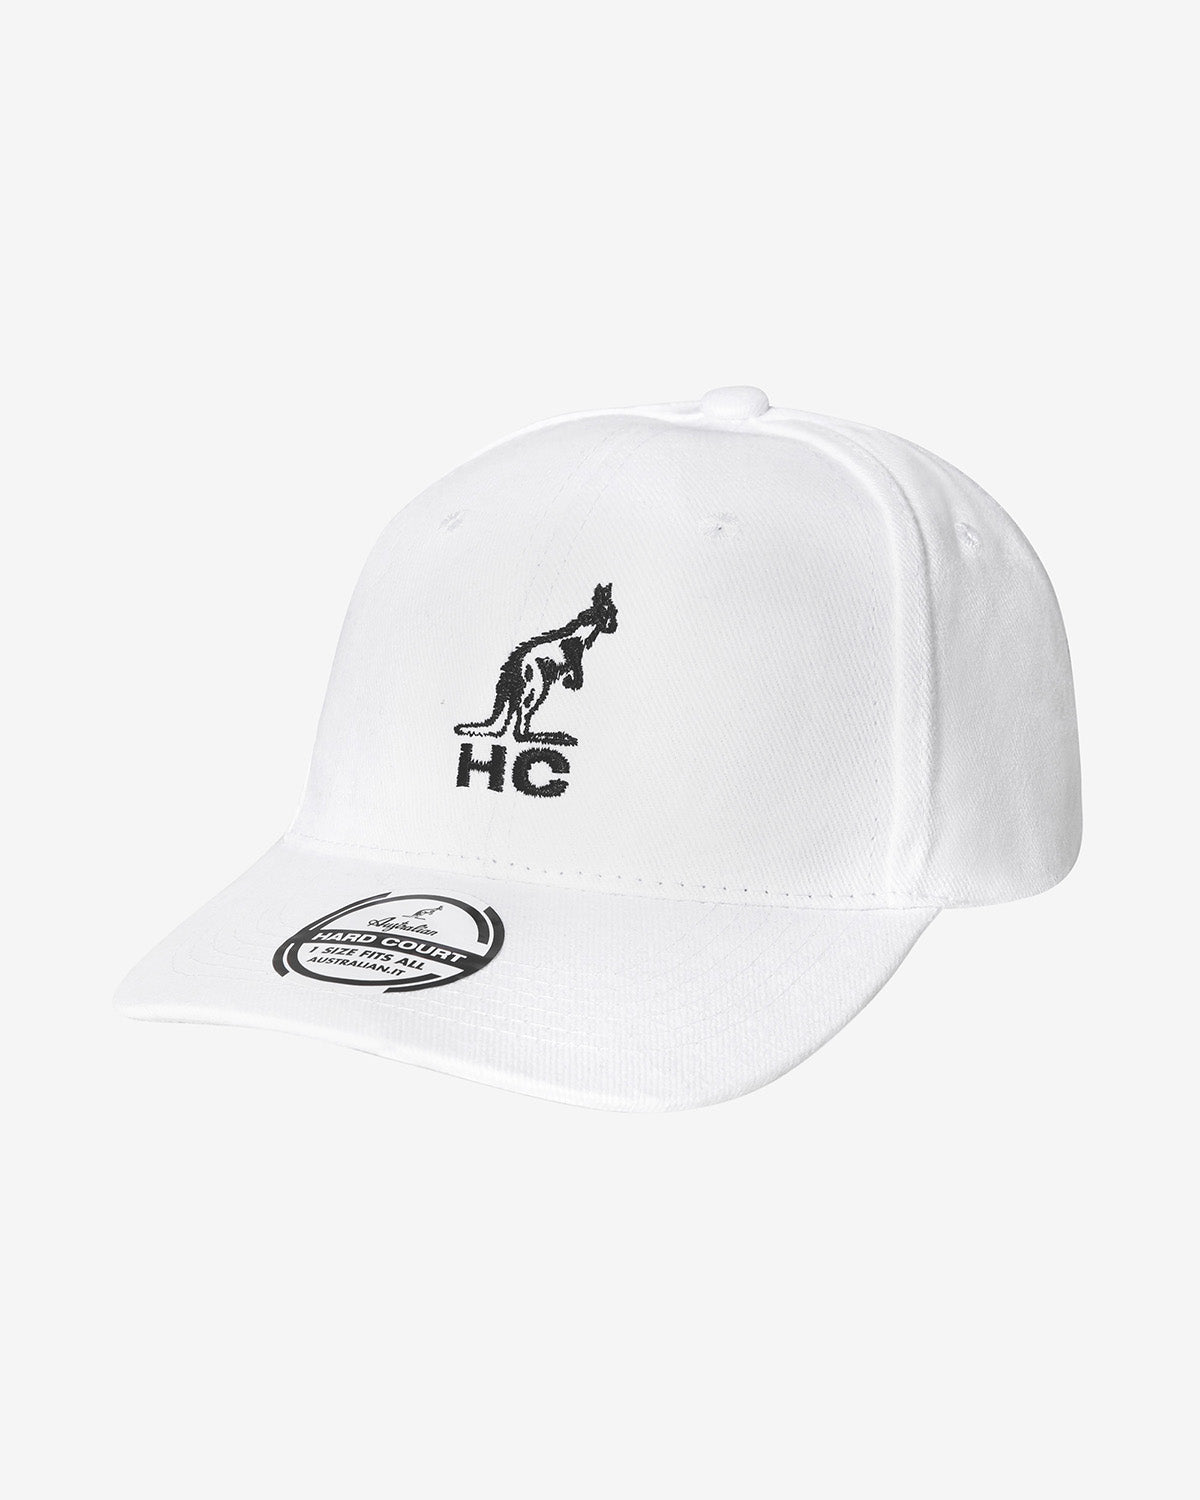 Hc Logo Cap: Australian Hard Court